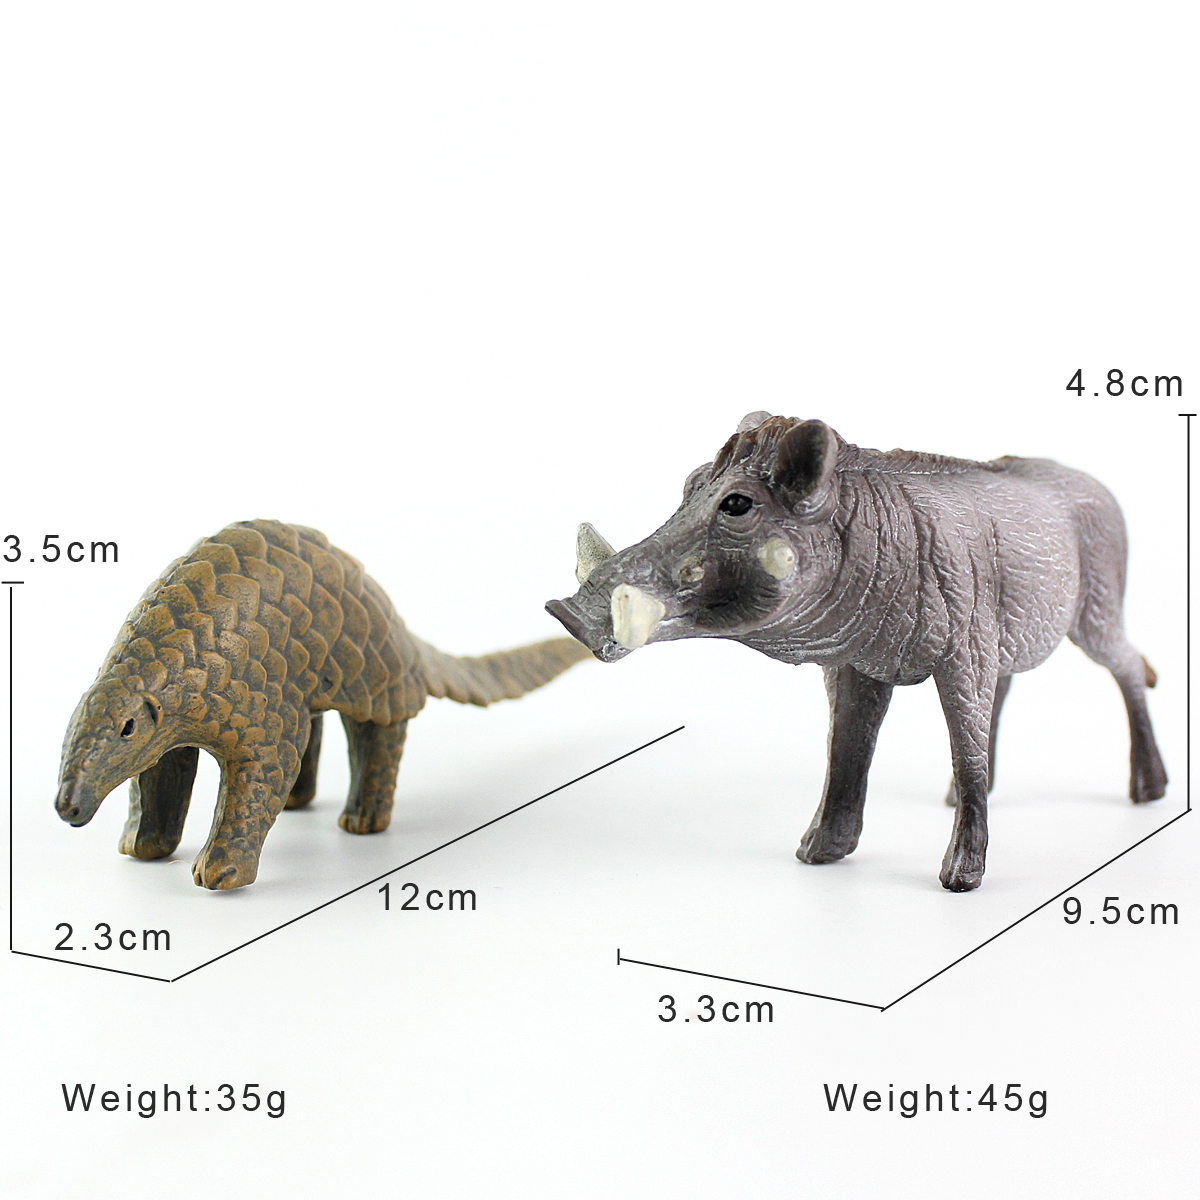 新款野生动物世界仿真野猪疣猪模型玩具穿山甲玩具小孩早教益智